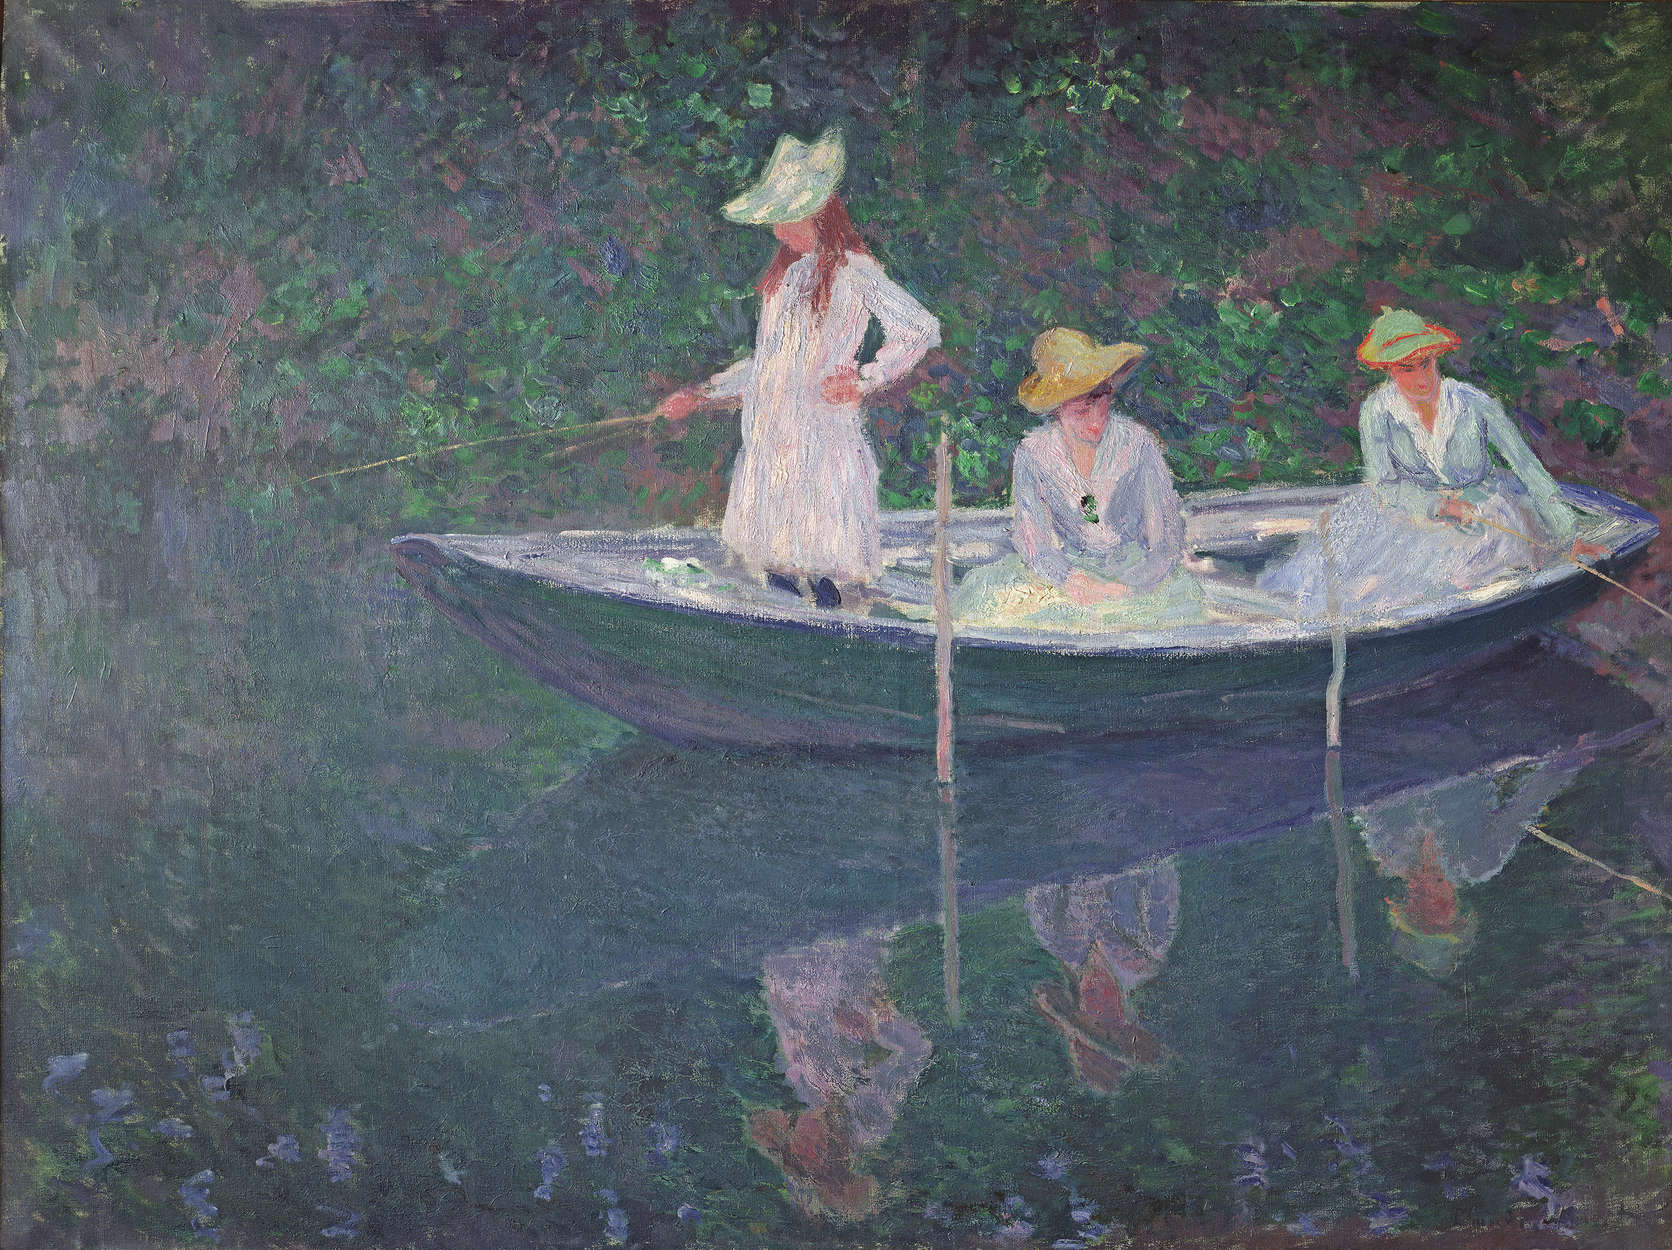             De boot in Giverny" muurschildering van Claude Monet
        